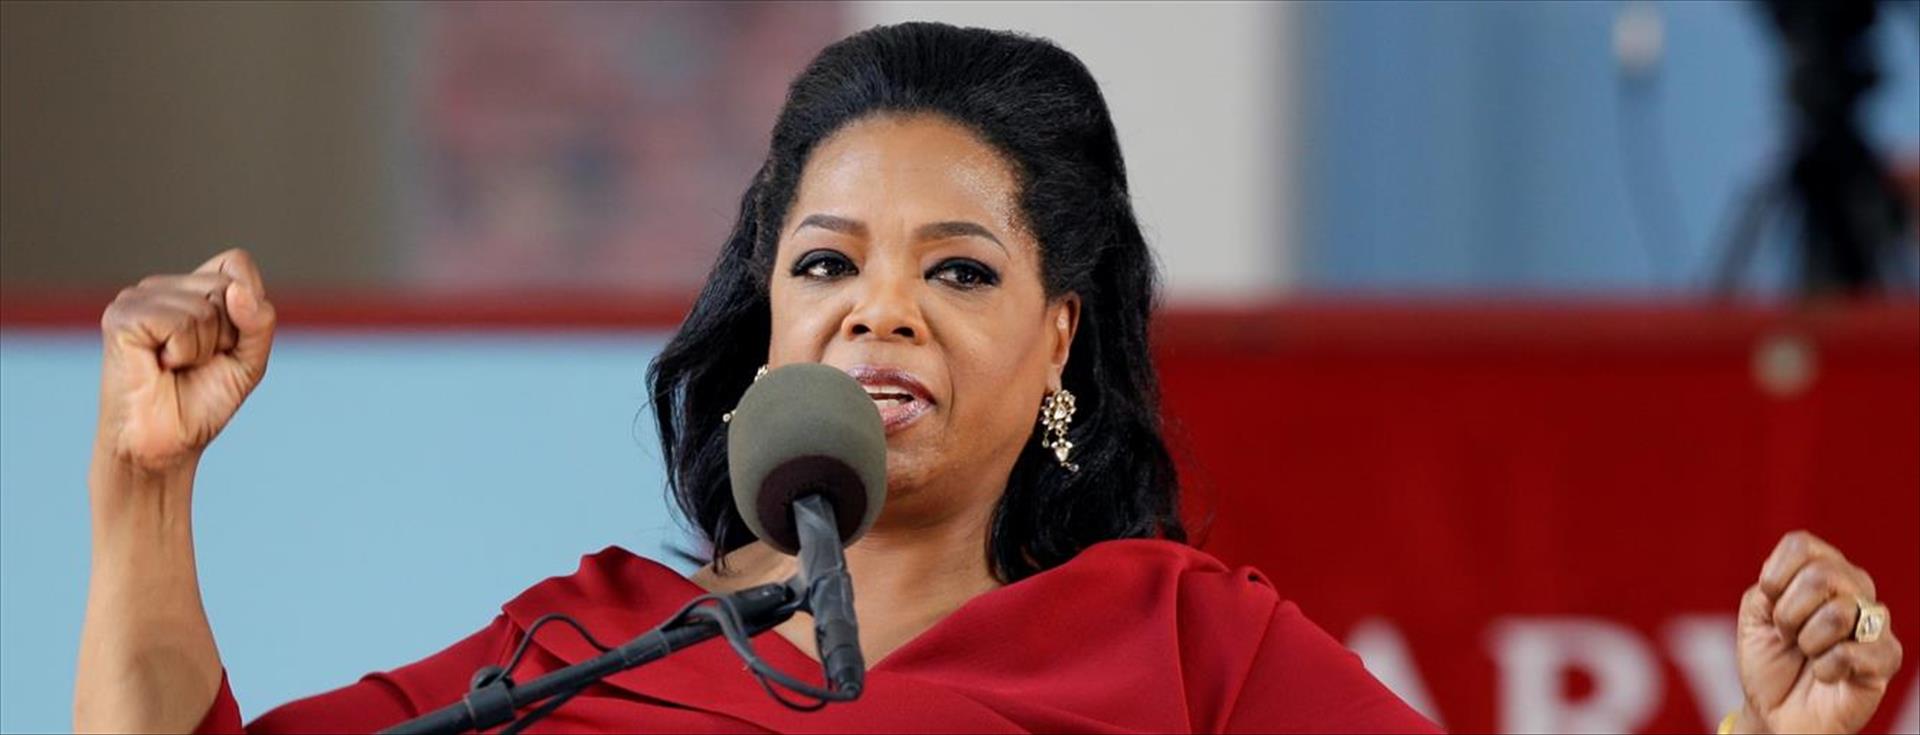 Oprah'ın Gençlere Tavsiyesi: Siz İşiniz Demek Değilsiniz Farkedin